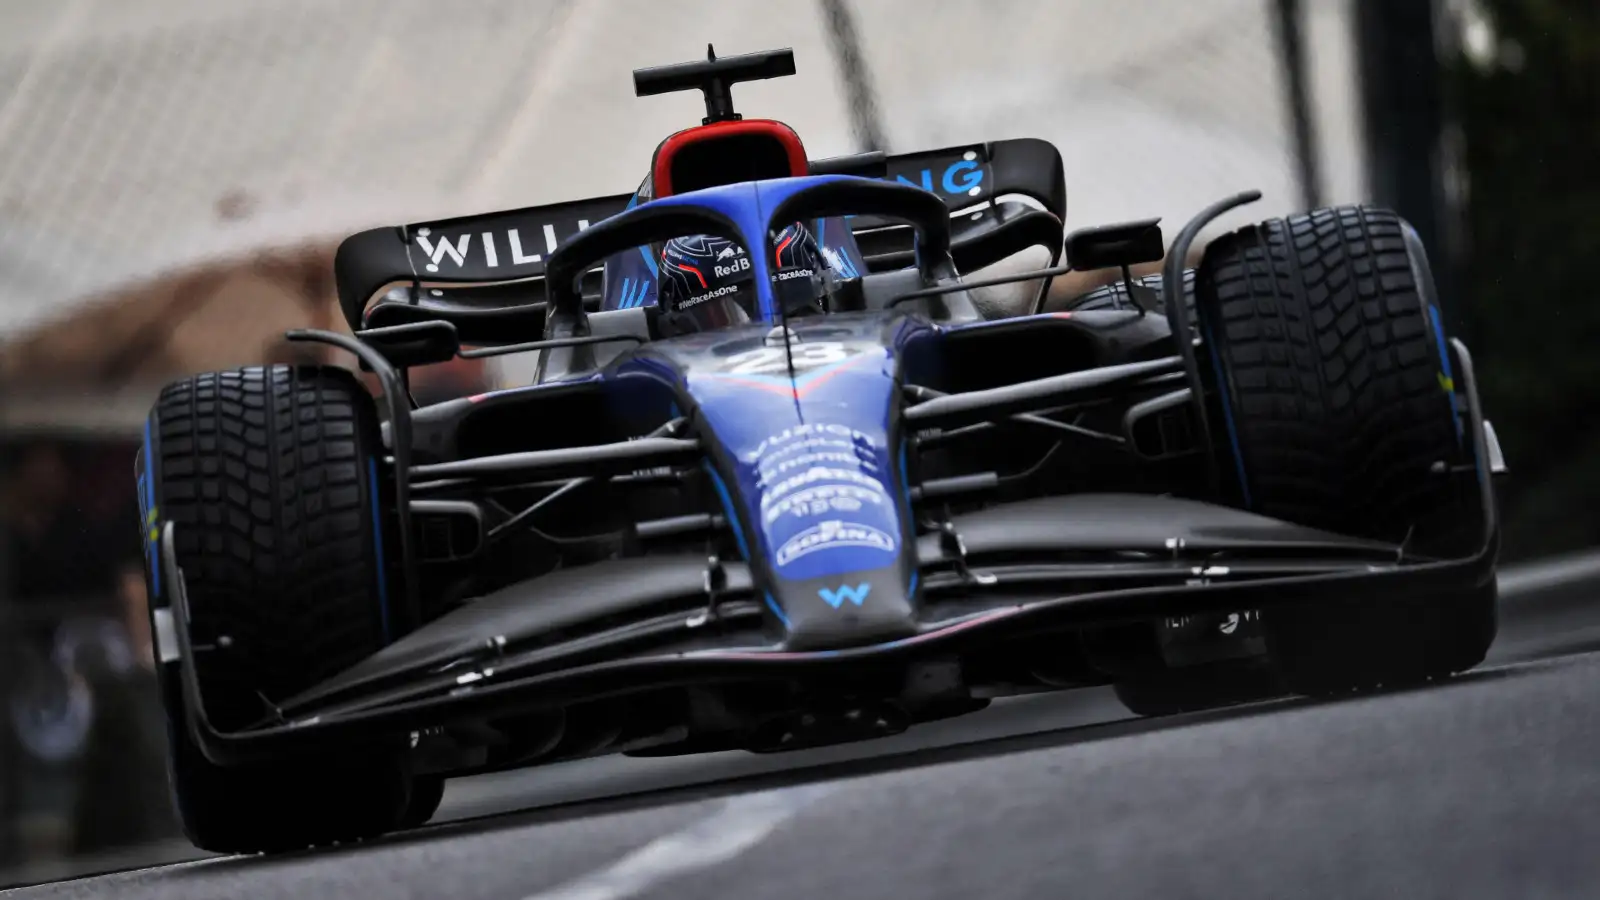 Williams' Alex Albon during the 2022 Monaco Grand Prix. Monte Carlo, May 2022.